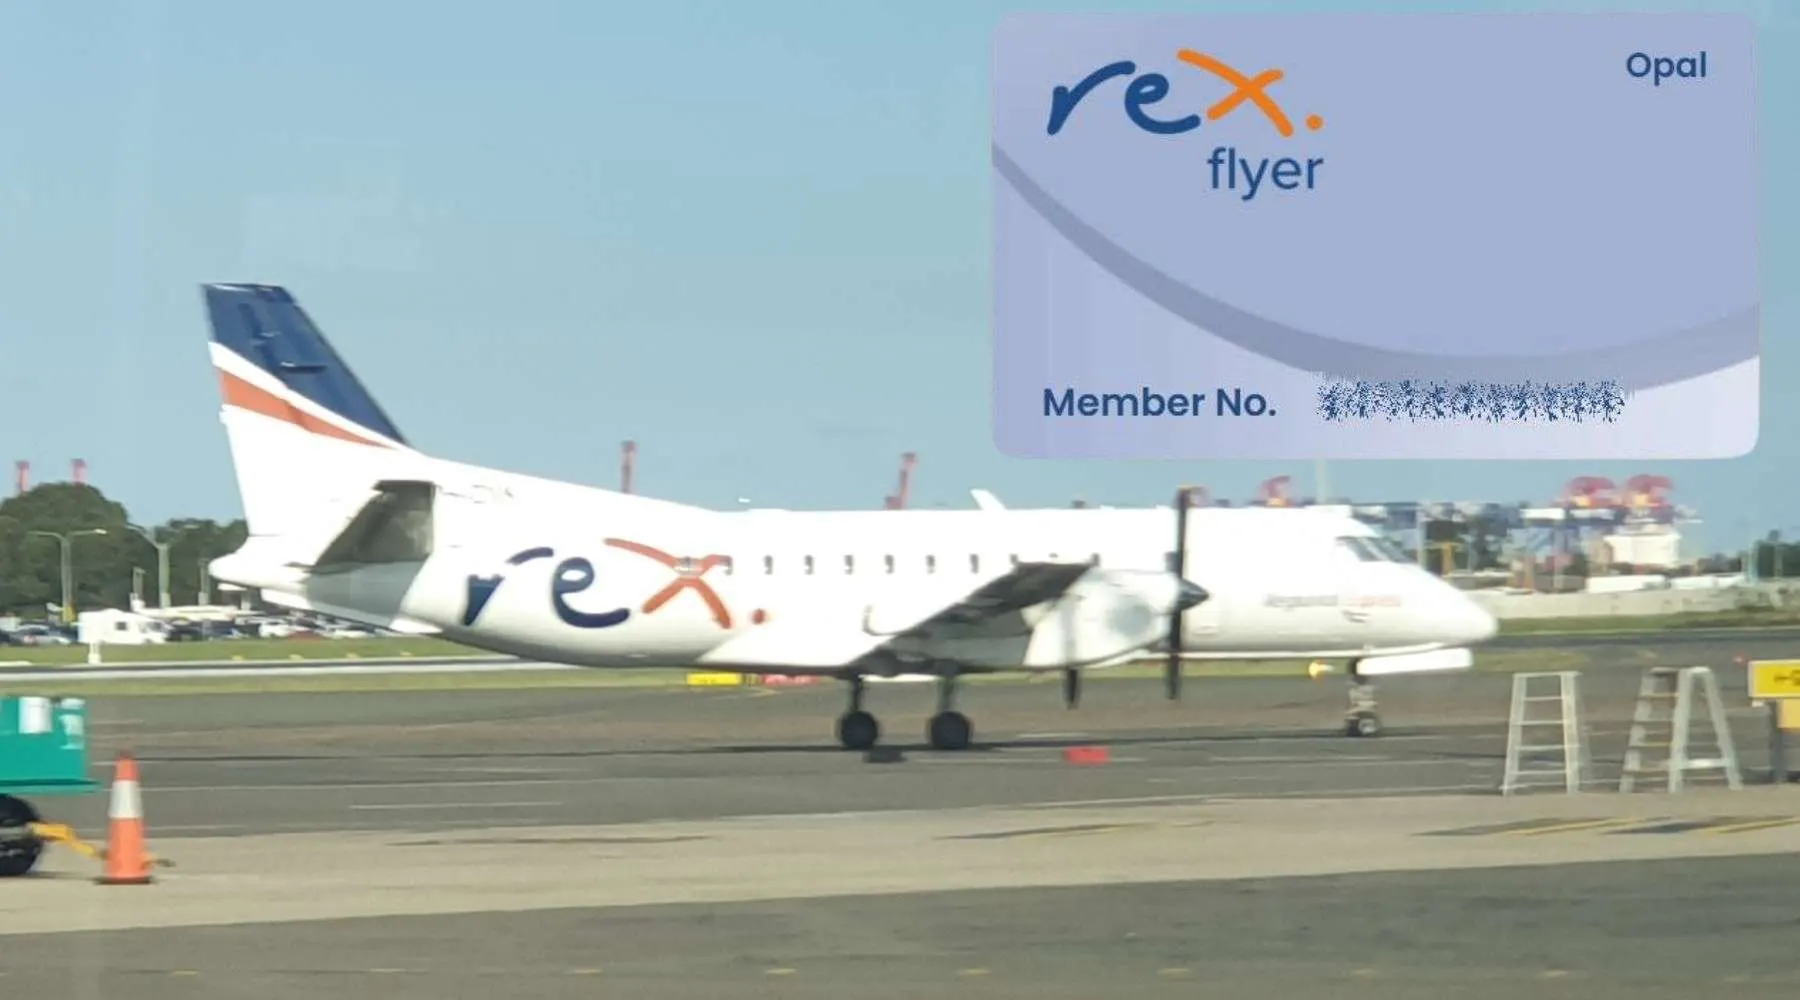 Rex aircraft and membership card